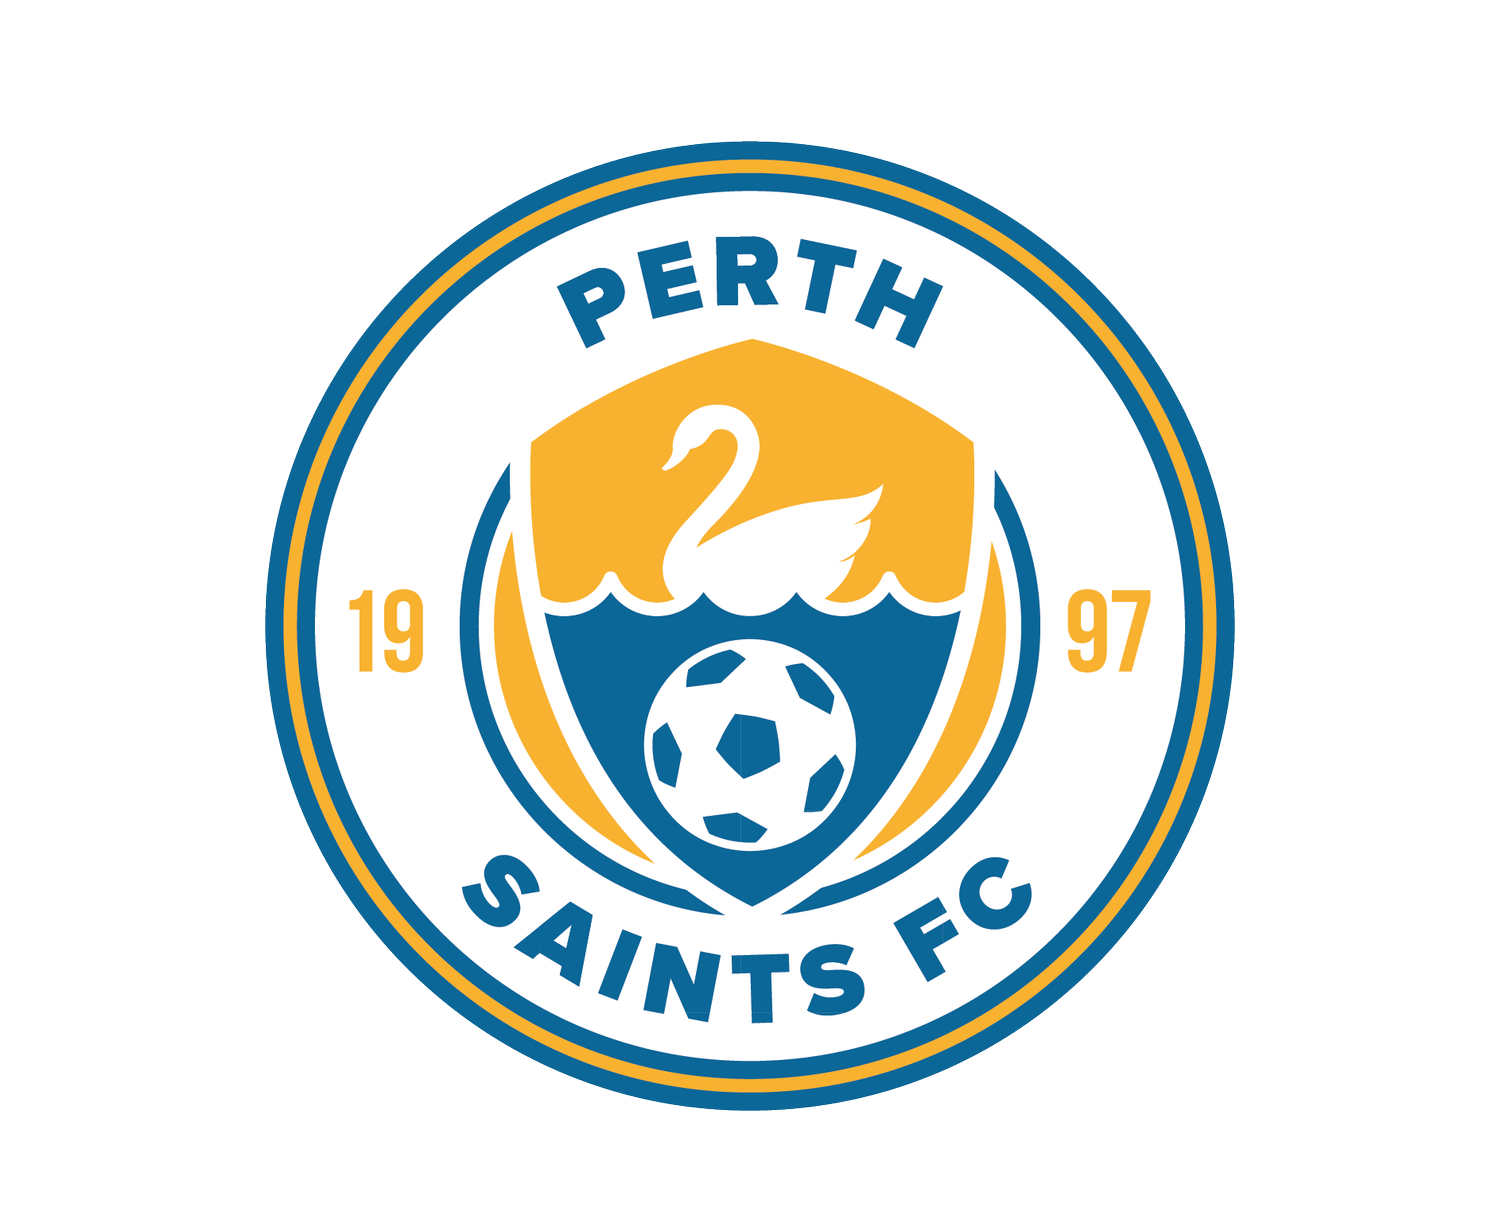 Perth Saints Football Club